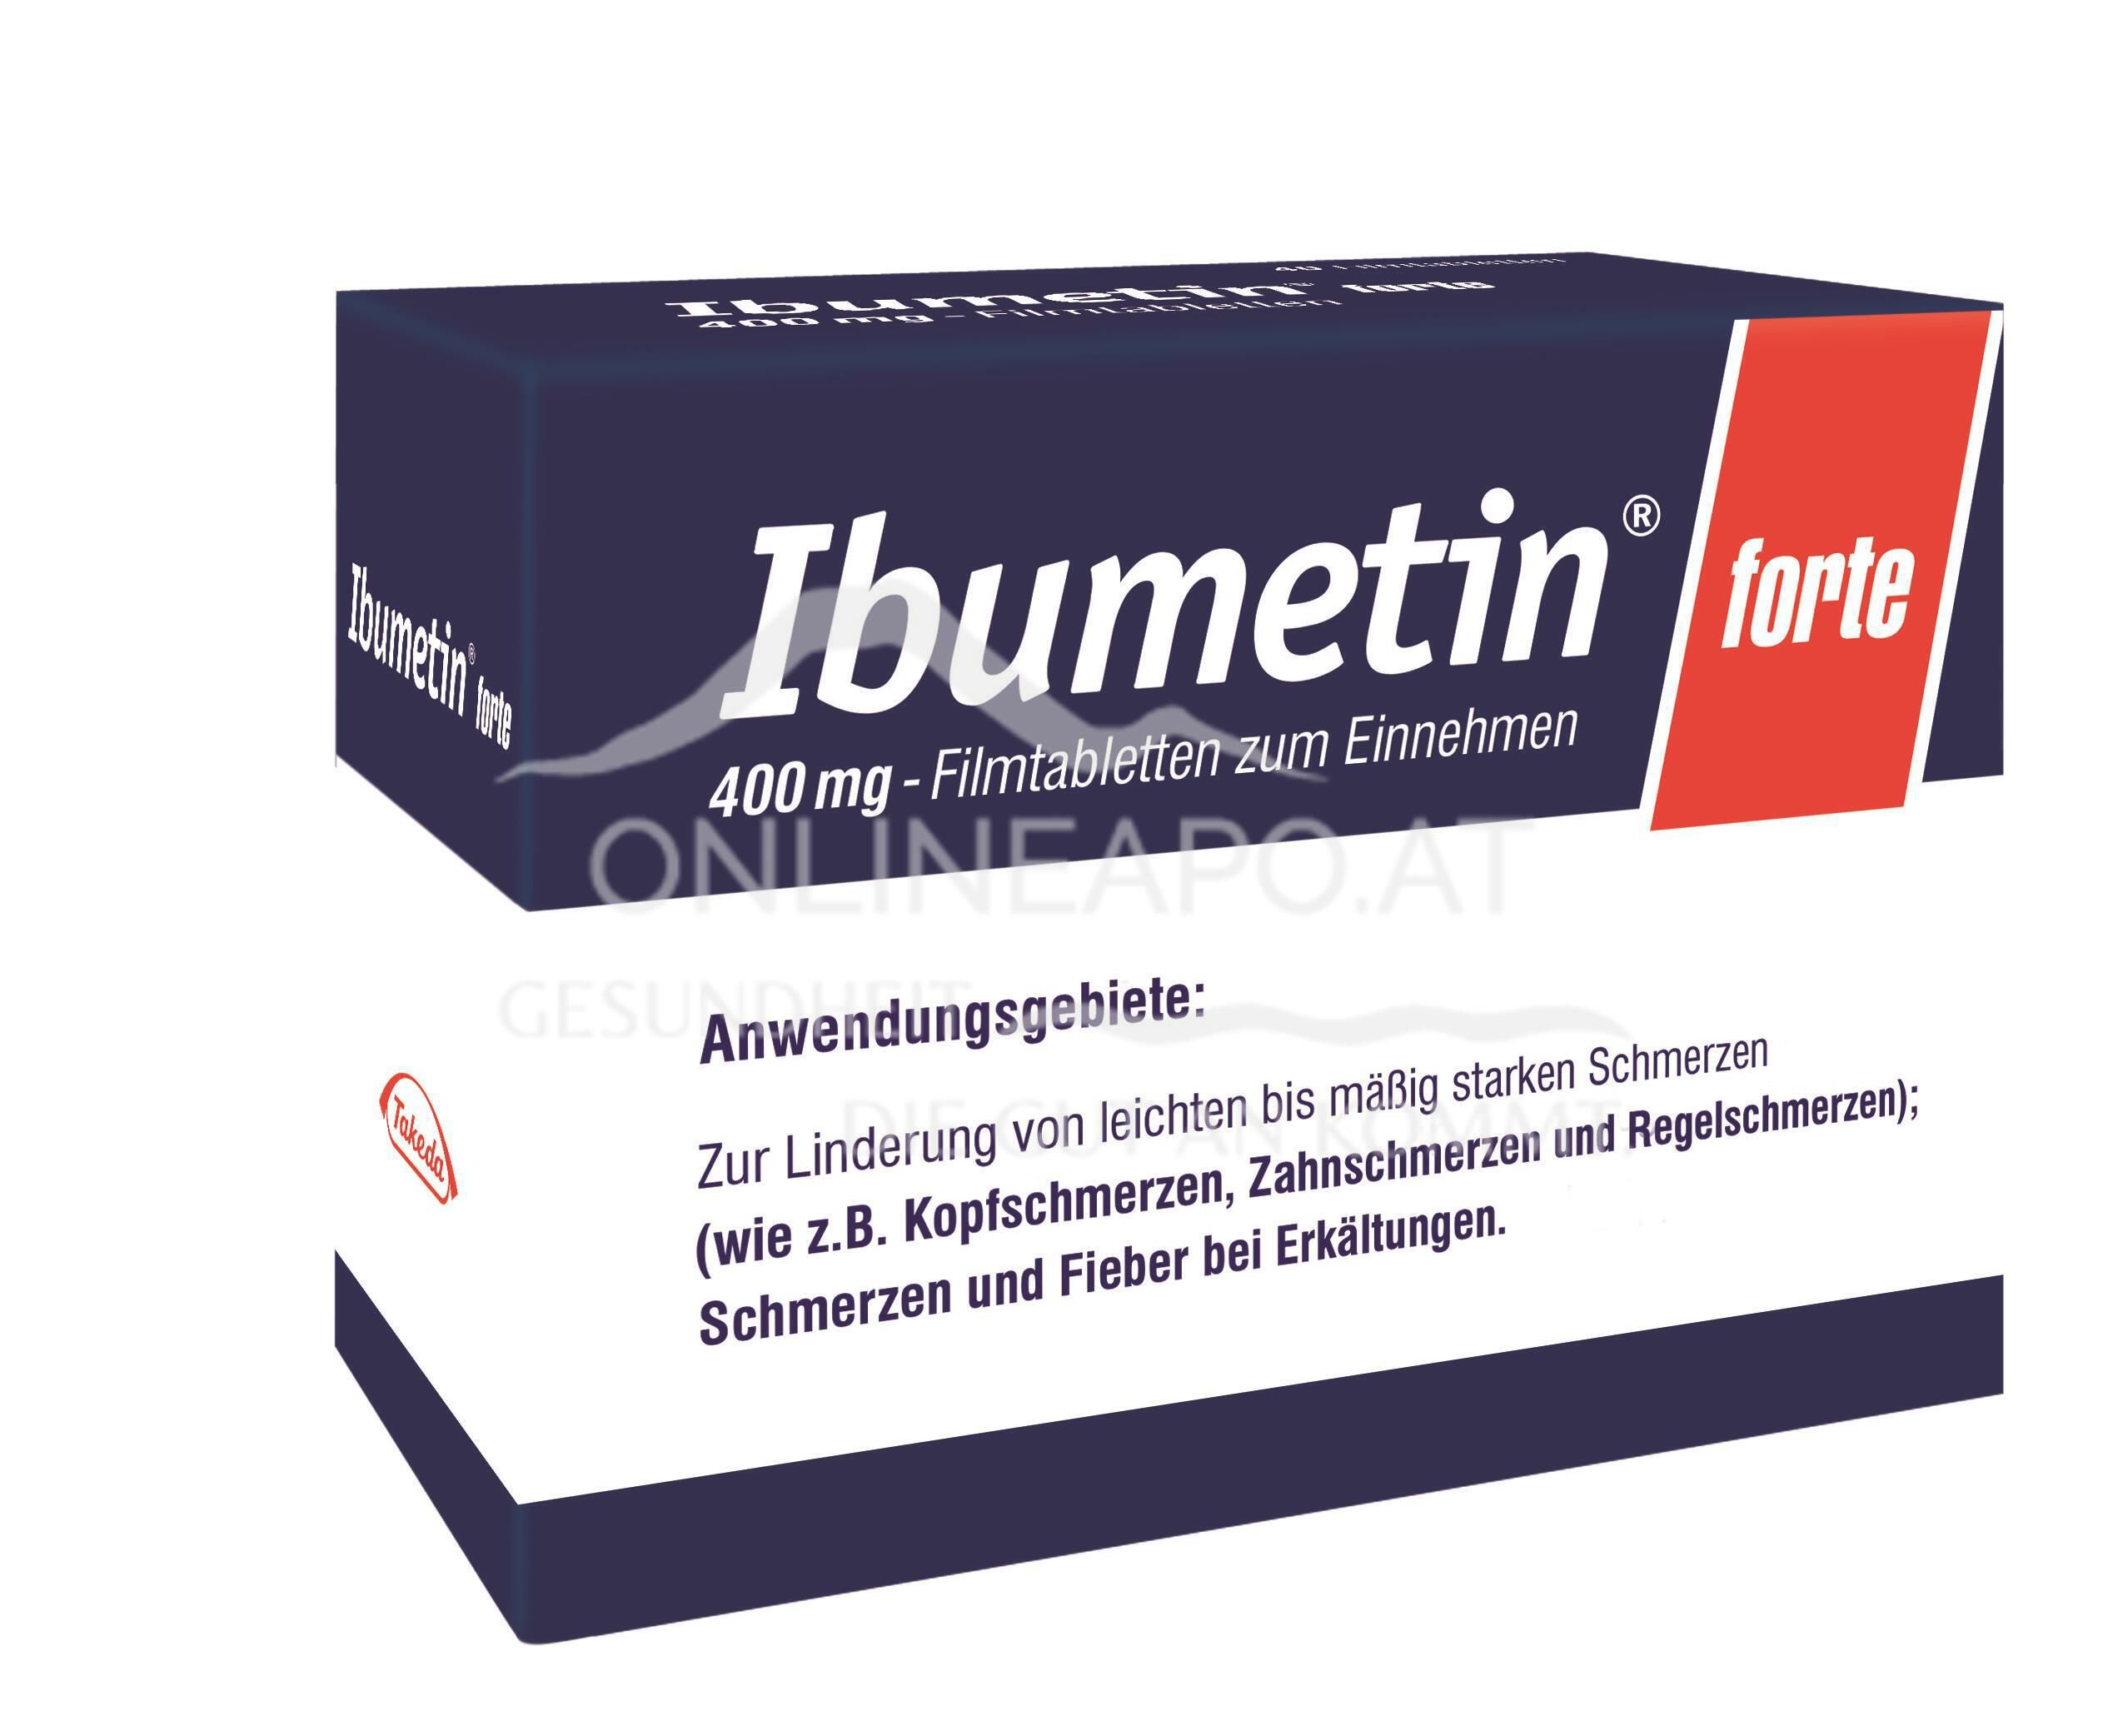 Ibumetin® forte 400 mg-Filmtabletten